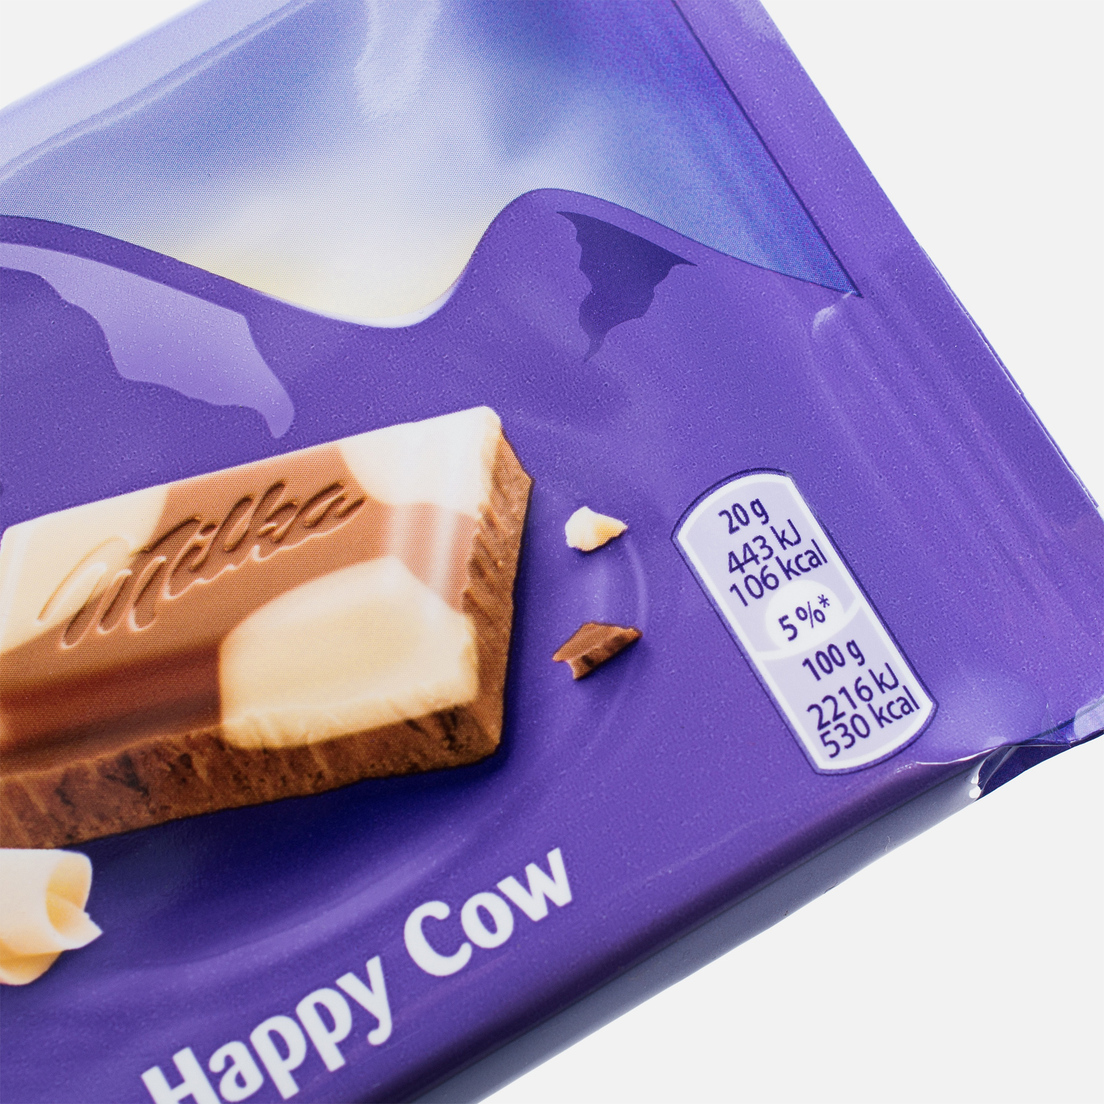 Milka Шоколад Happy Cows 100g